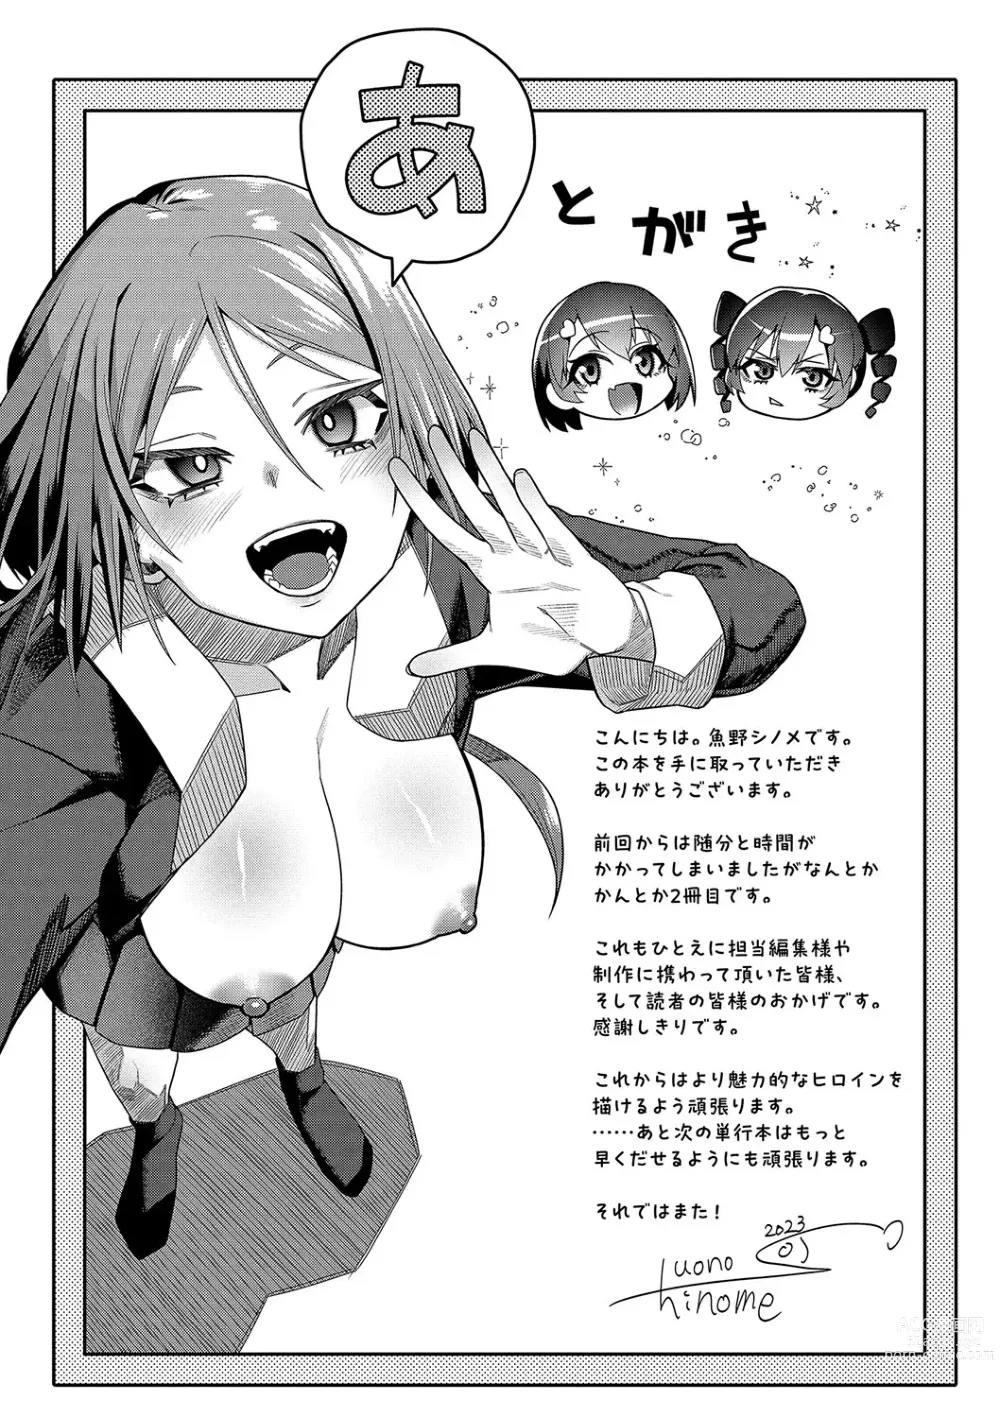 Page 204 of manga Zakoiko